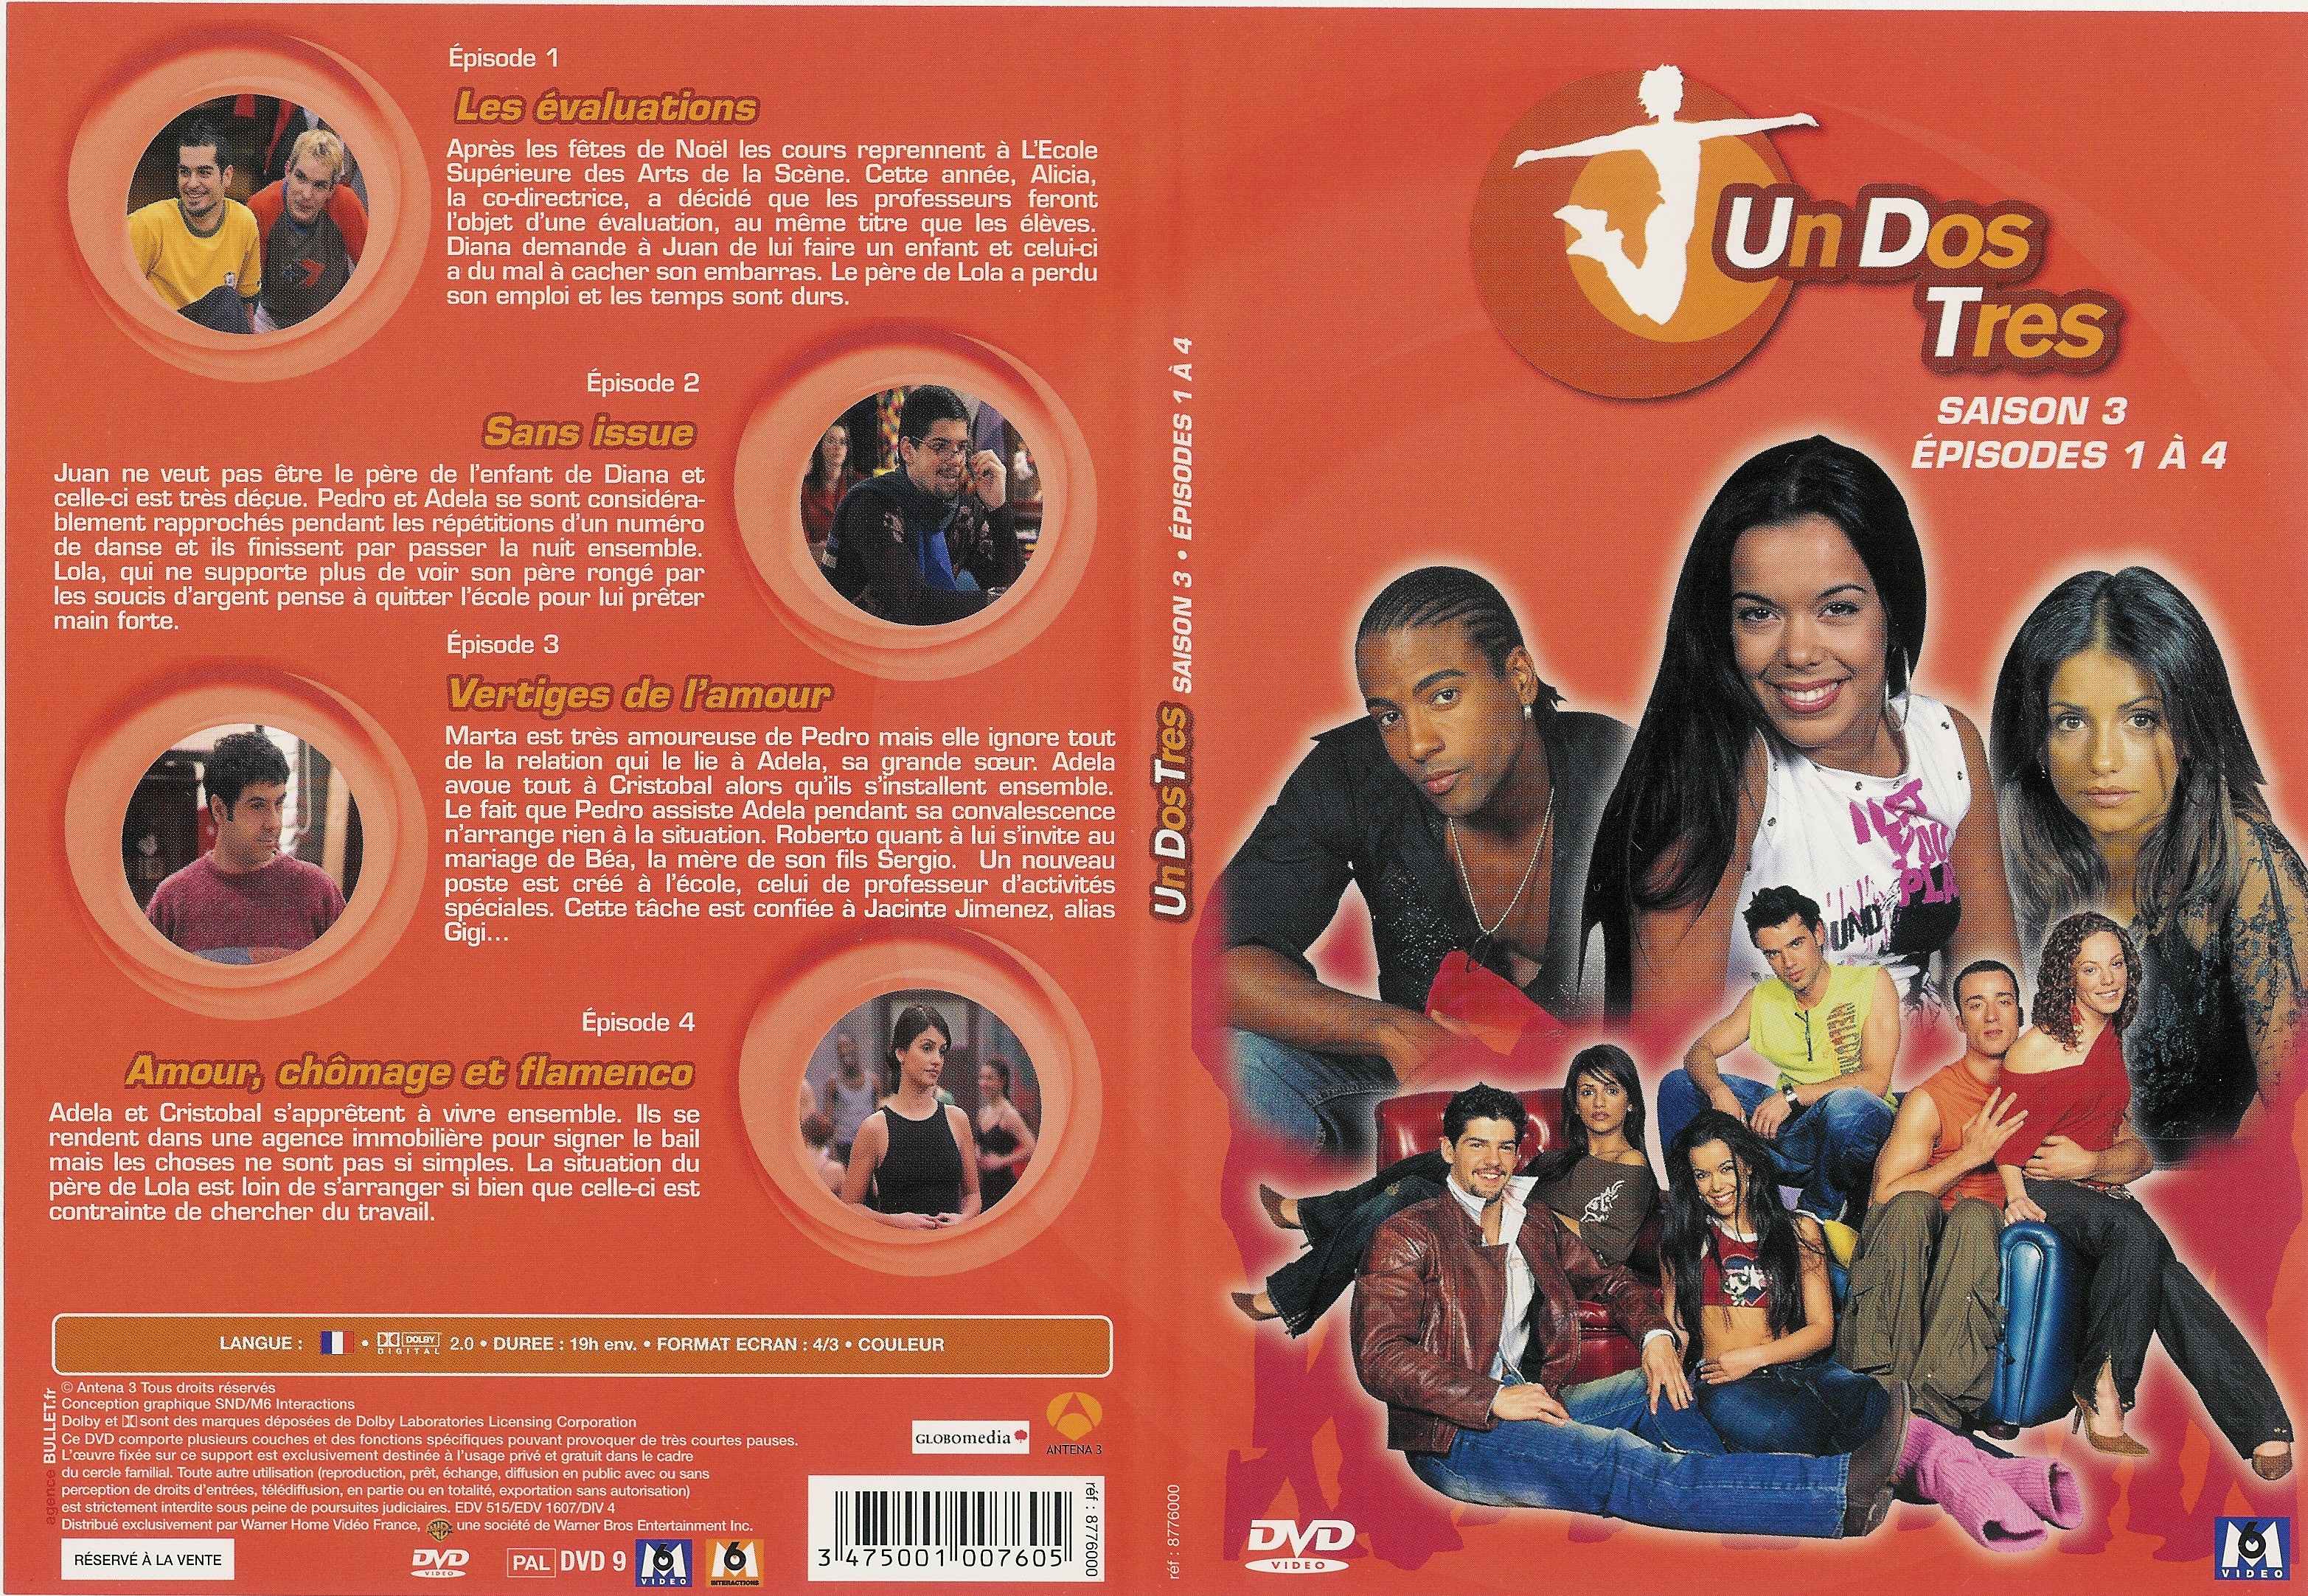 Jaquette DVD Un dos tres Saison 3 DVD 1